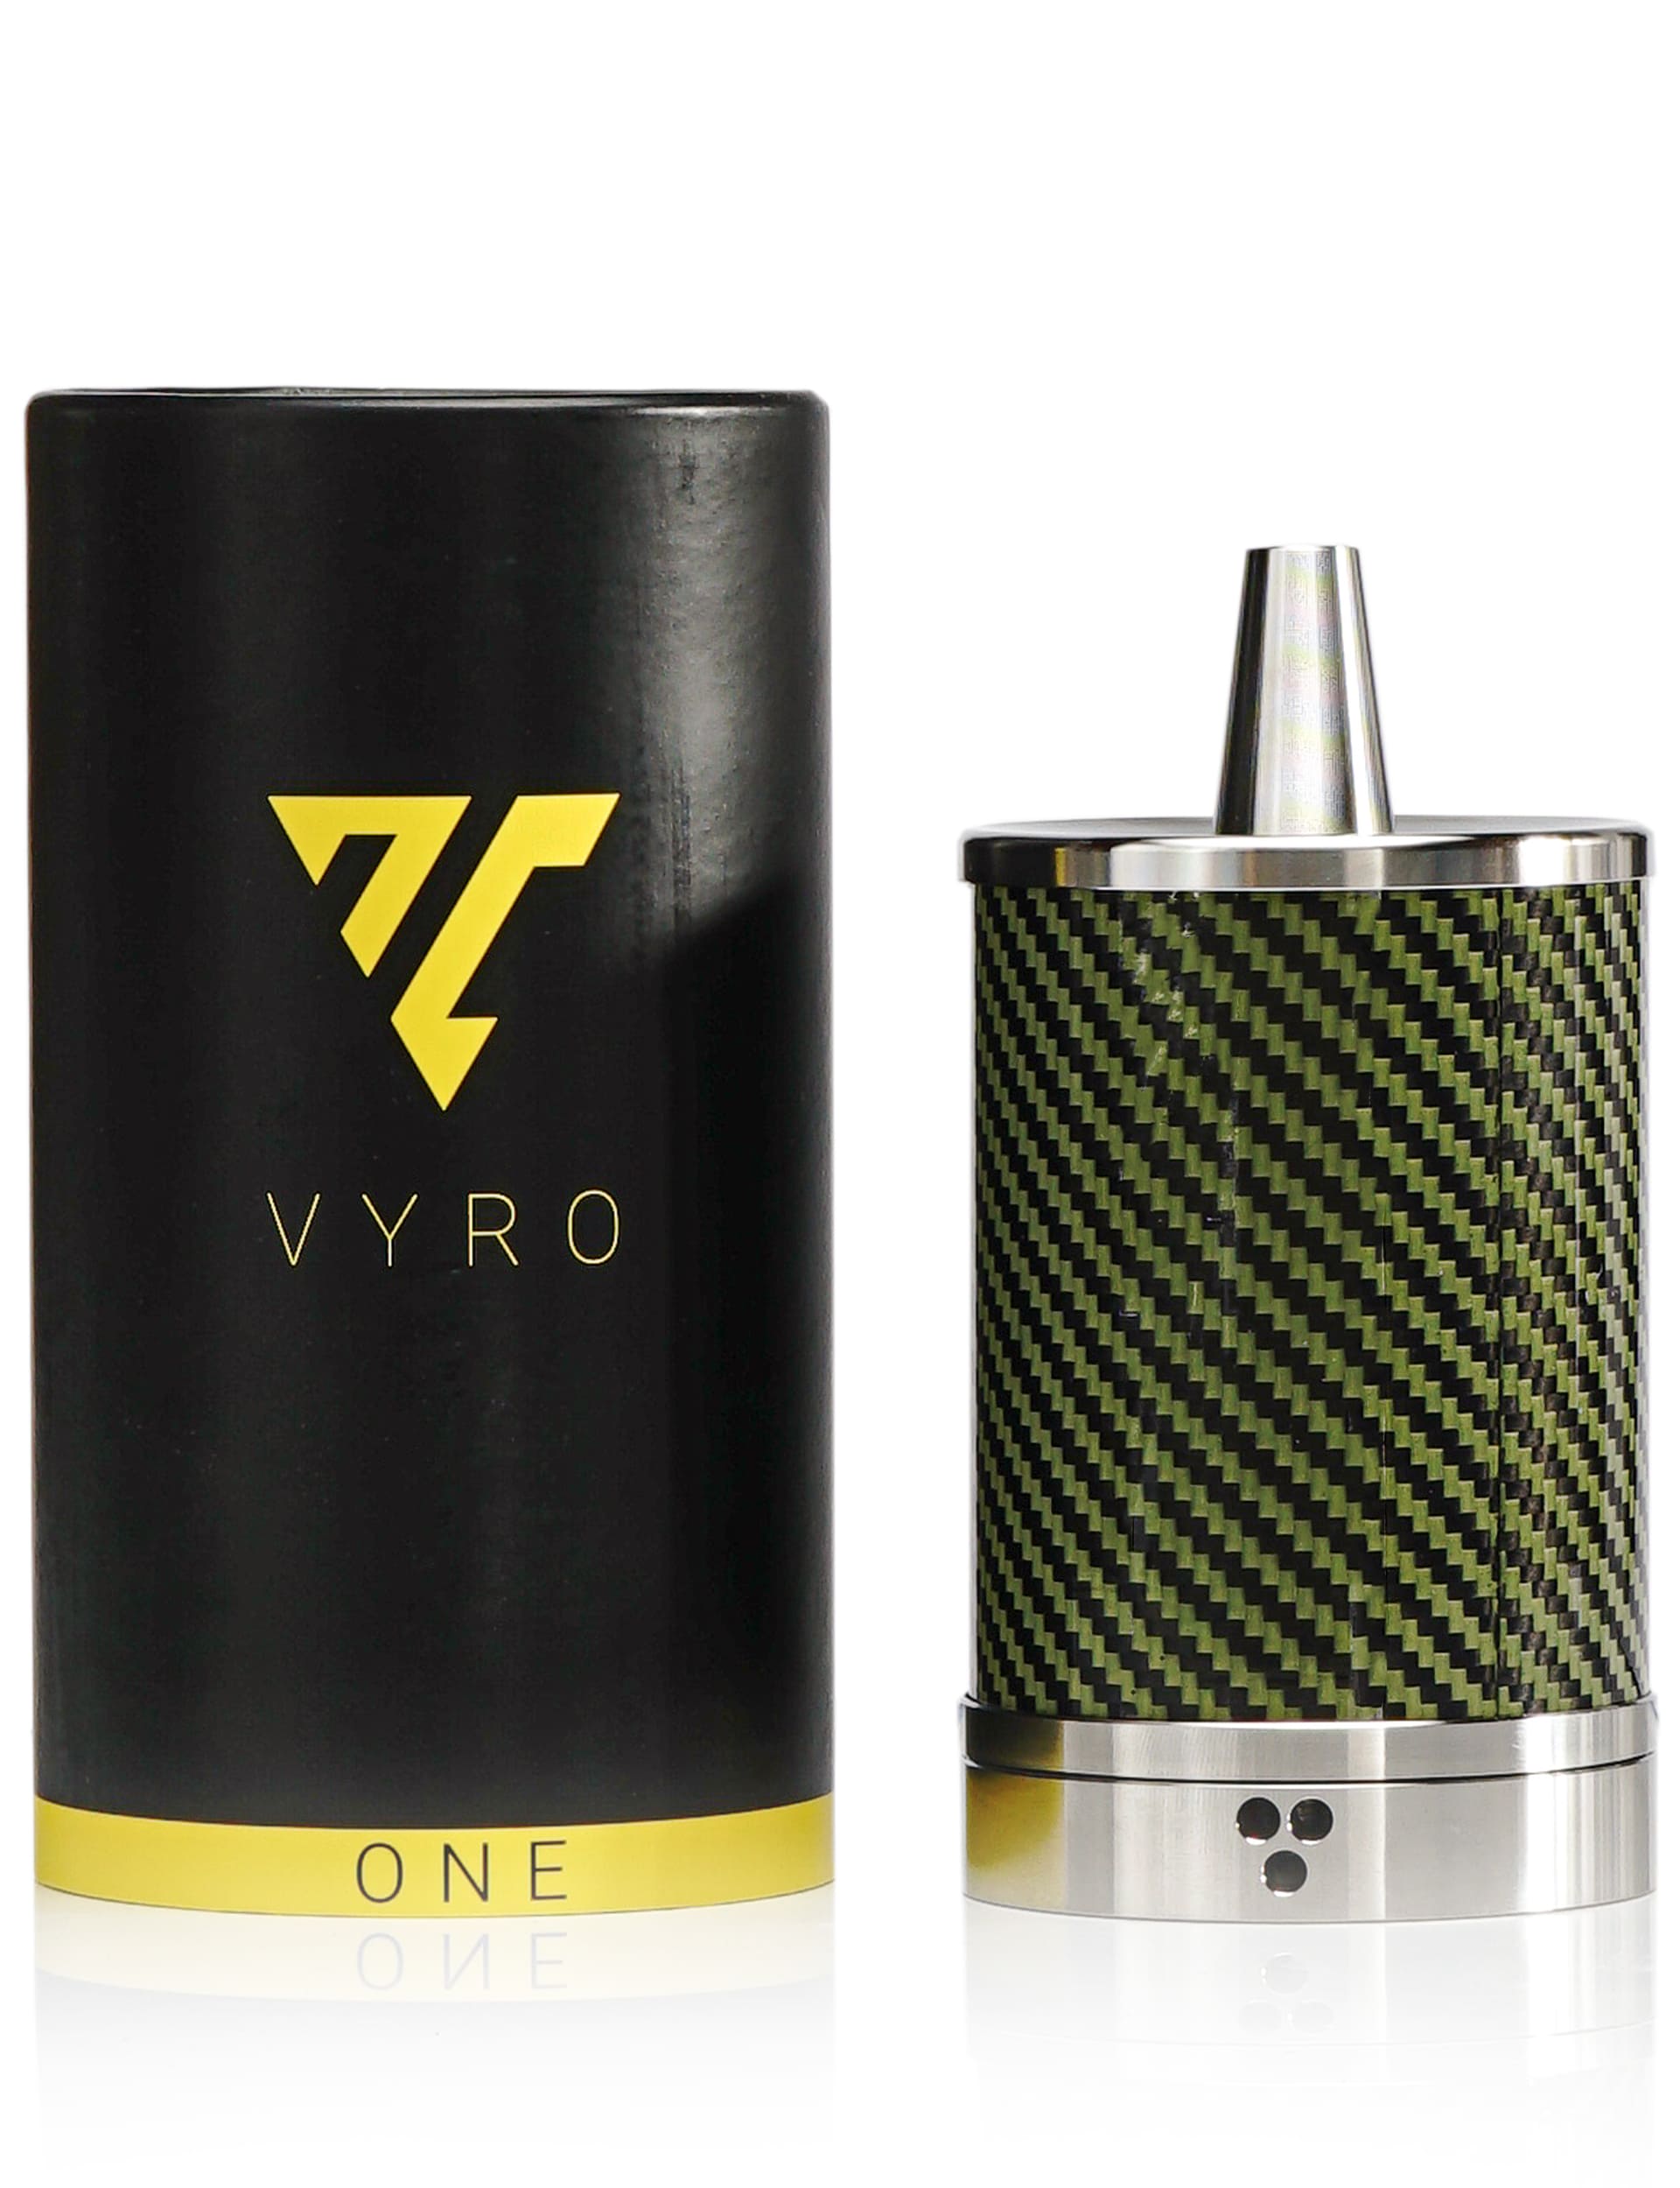 Vyro One / Volt